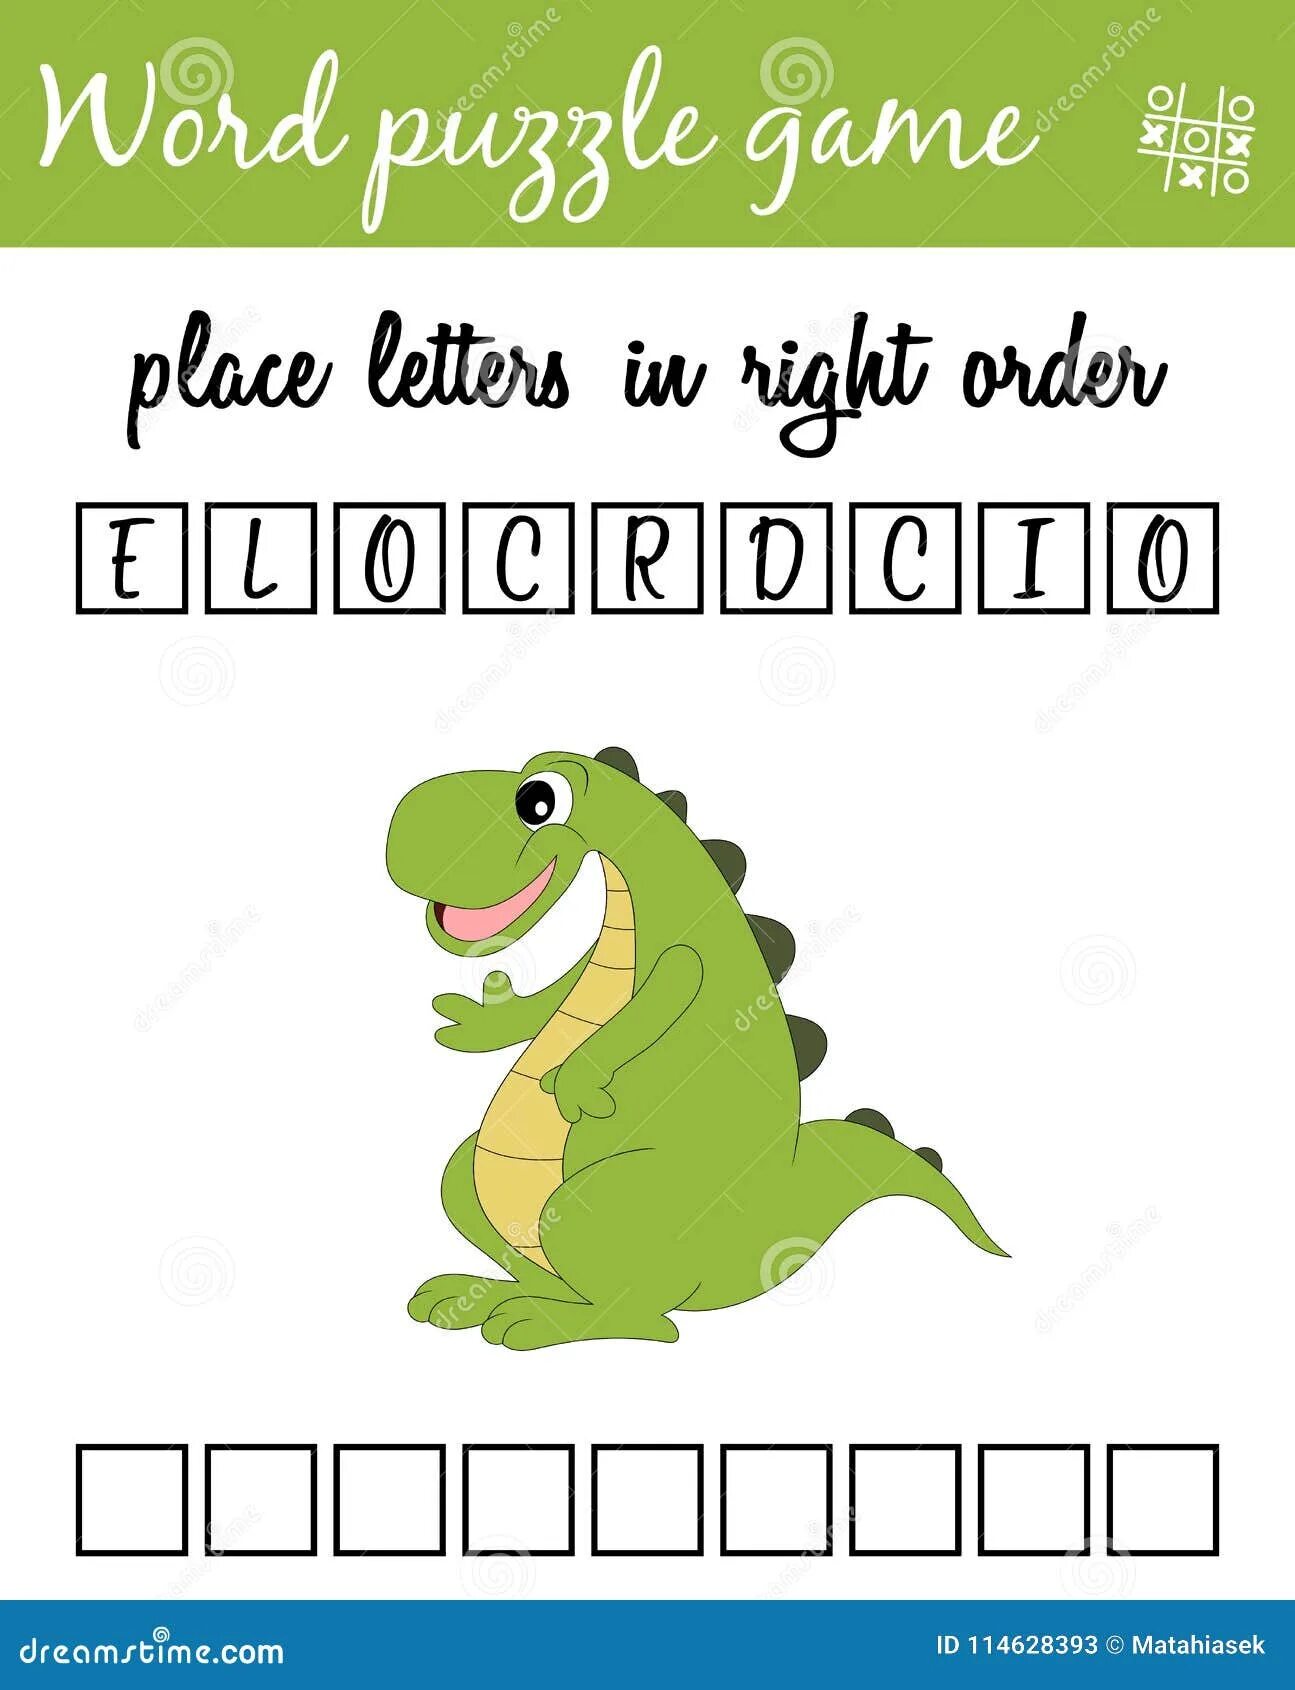 Английские слова для крокодила. Слова для игры в крокодила на английском. Игра крокодил на английском для детей.